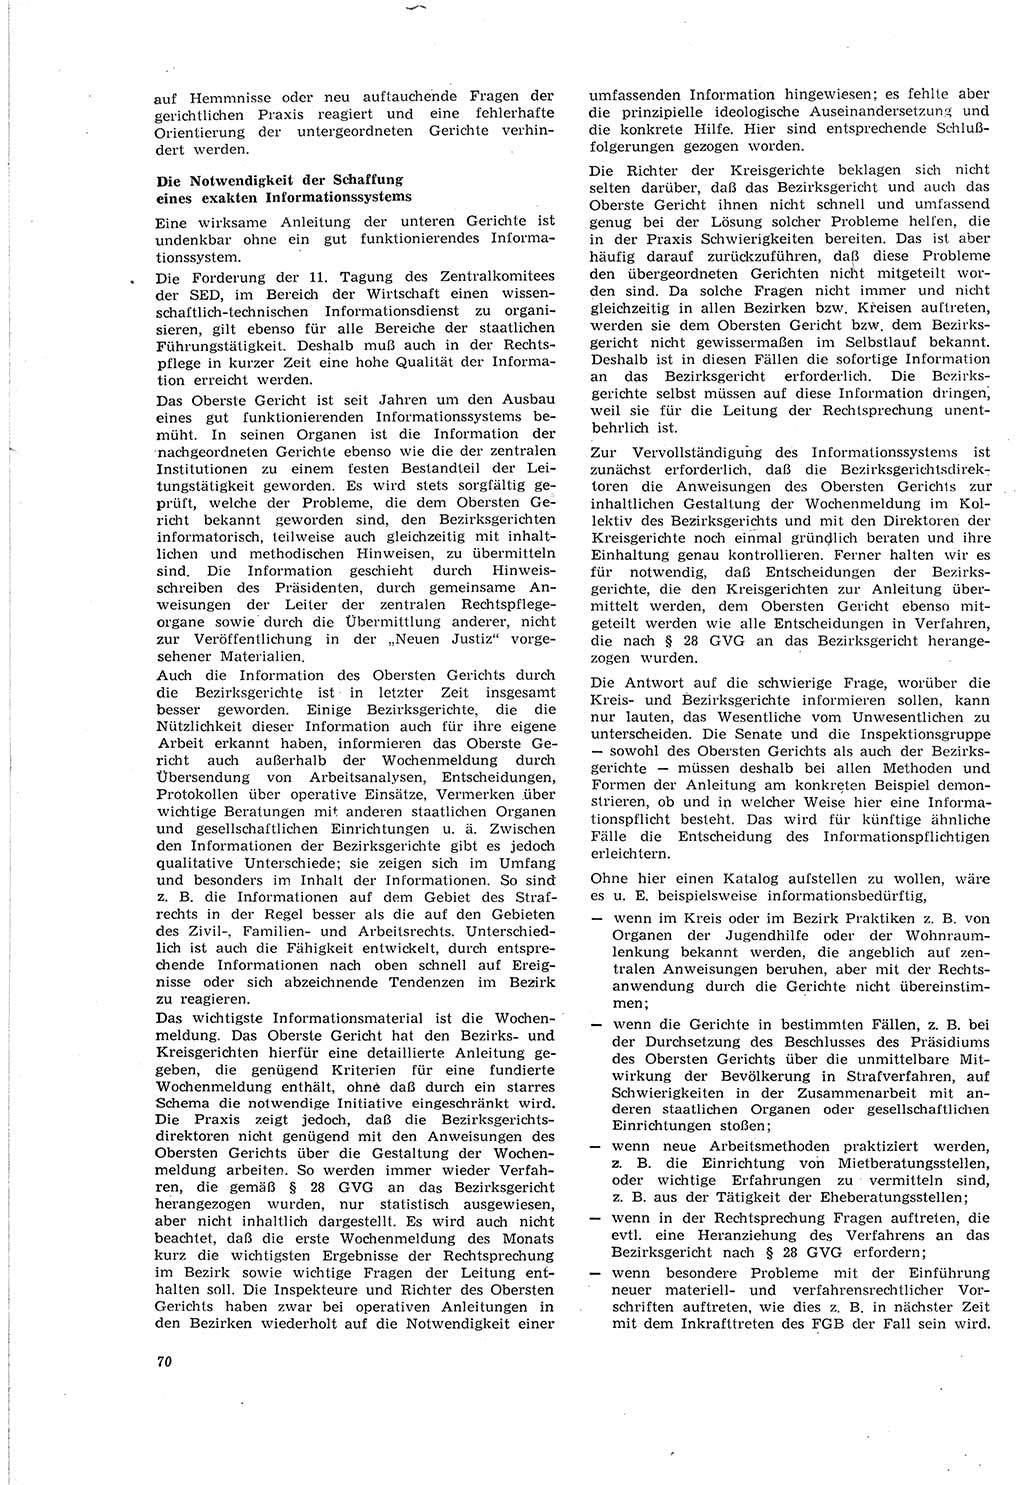 Neue Justiz (NJ), Zeitschrift für Recht und Rechtswissenschaft [Deutsche Demokratische Republik (DDR)], 20. Jahrgang 1966, Seite 70 (NJ DDR 1966, S. 70)